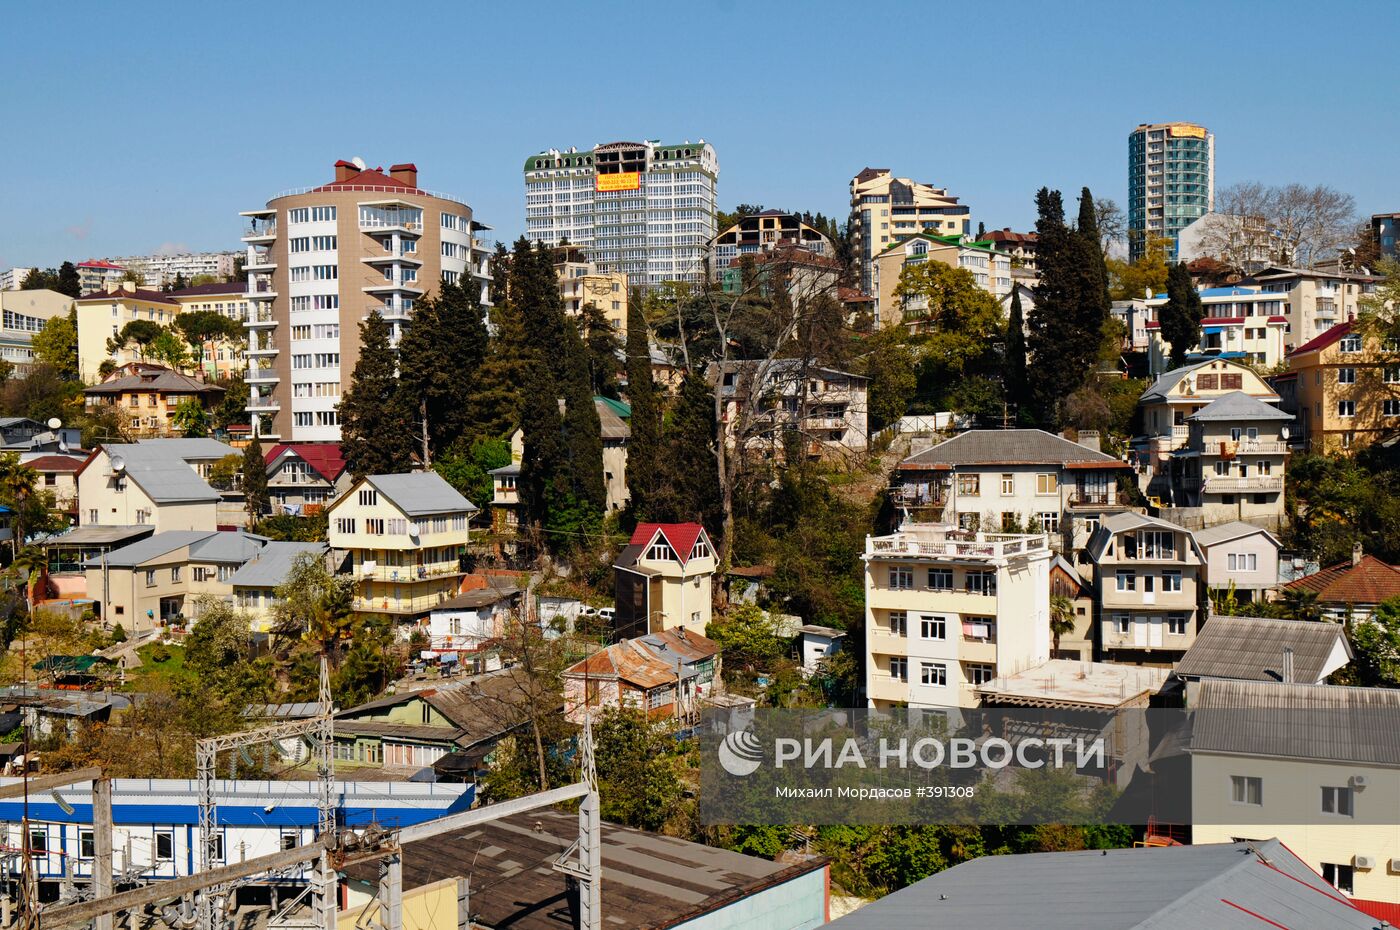 Вид на микрорайон "Светлана" в Сочи